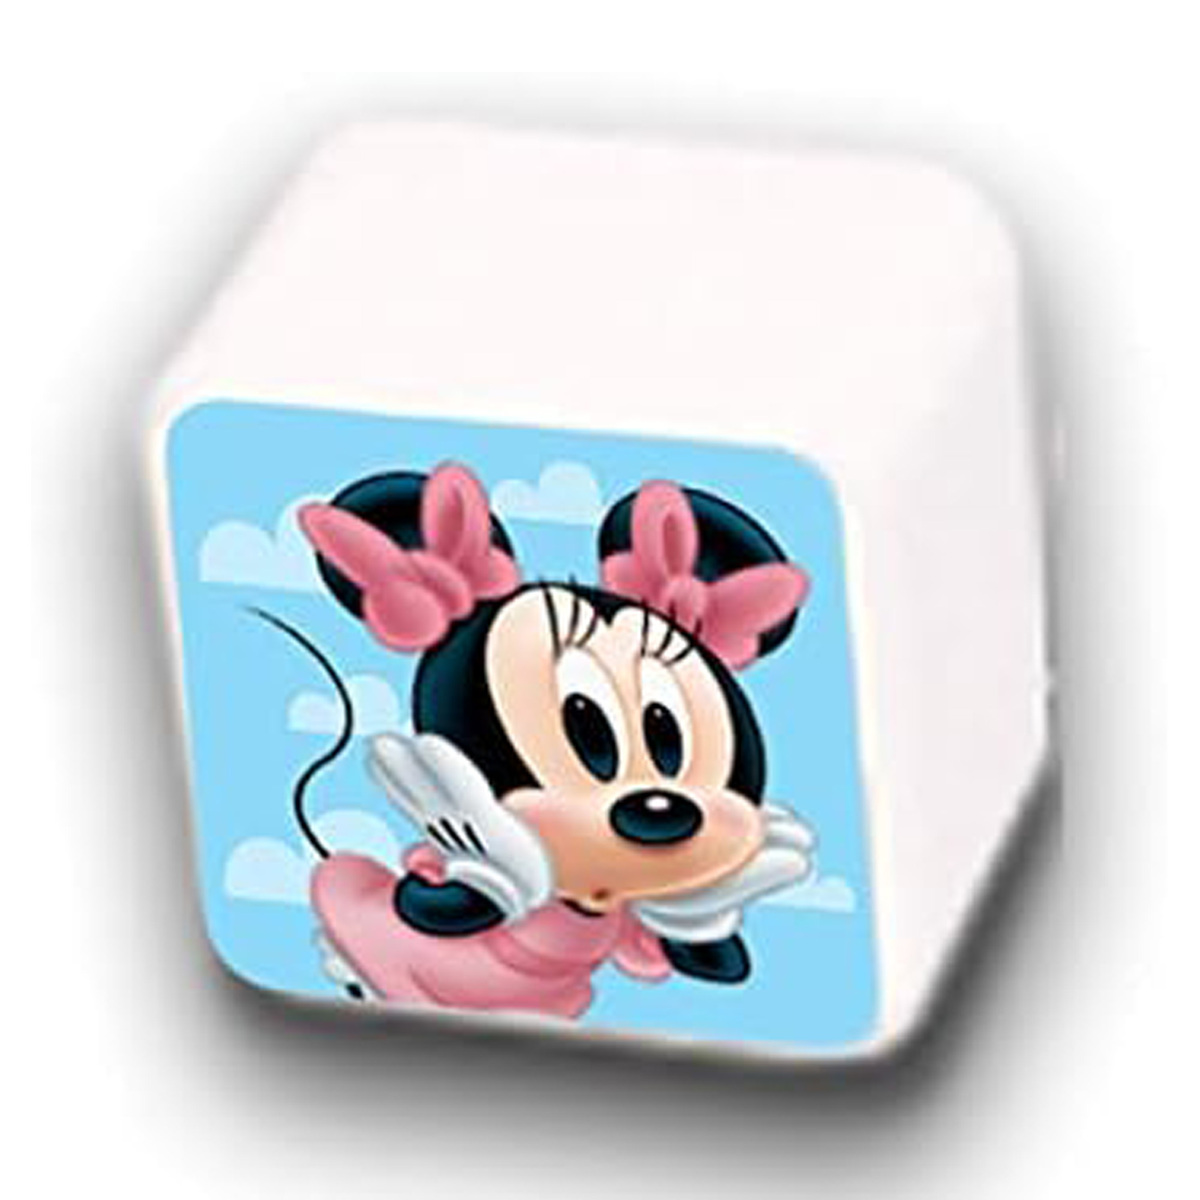 Kiddie Land Disney Minnie Play n Sort Activity Train, 054882